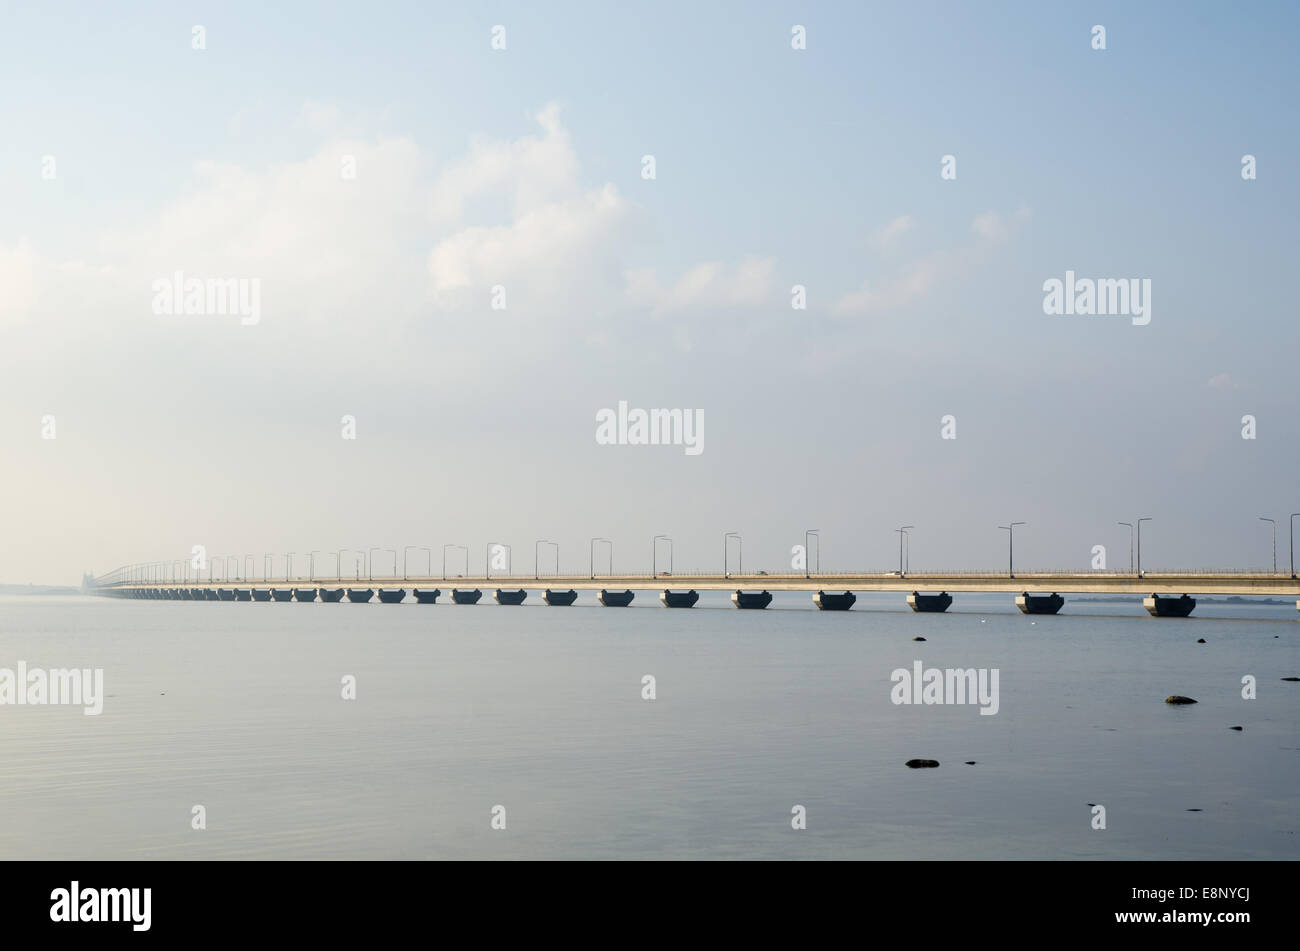 Nebel an der Öland-Brücke - Verbindung der schwedischen Insel Öland mit dem Festland Schweden Stockfoto